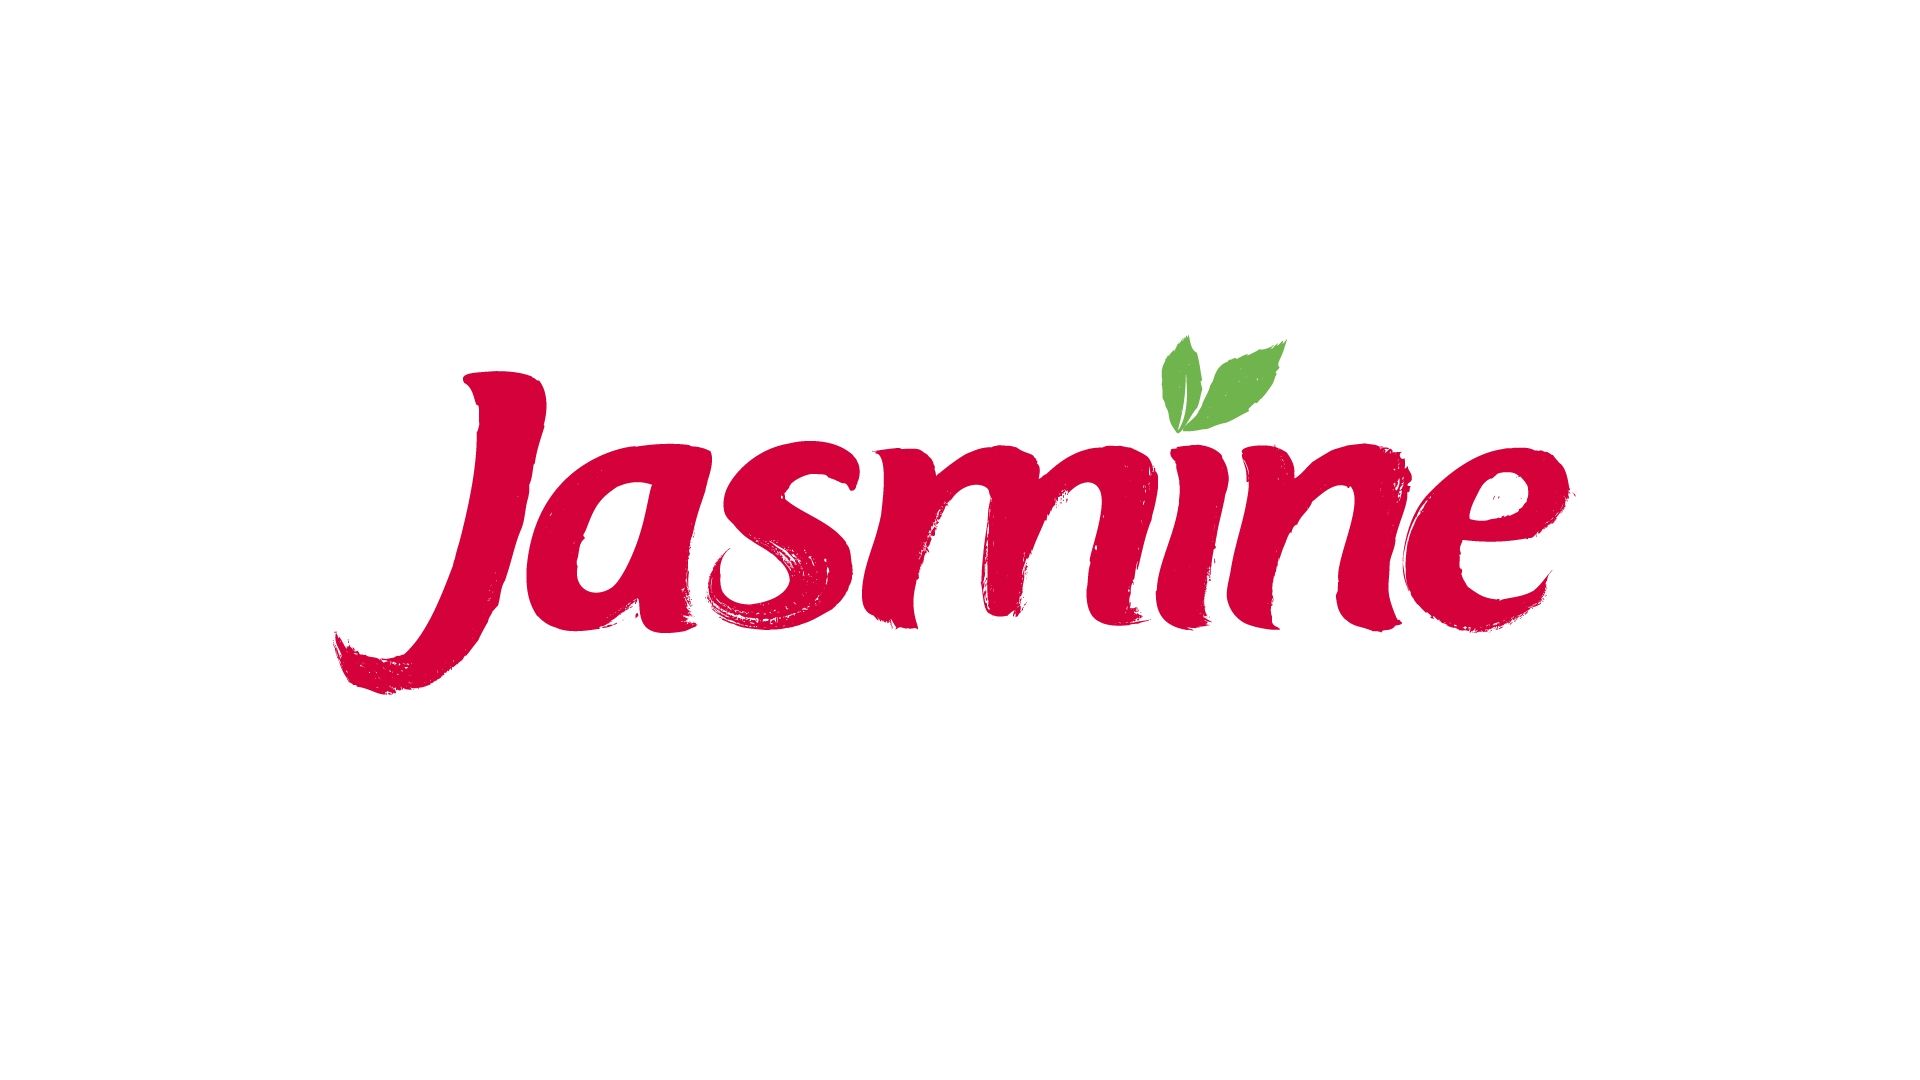 Jasmine Alimentos renova propósito conectada com suas raízes e propõe "gosto de viver bem"